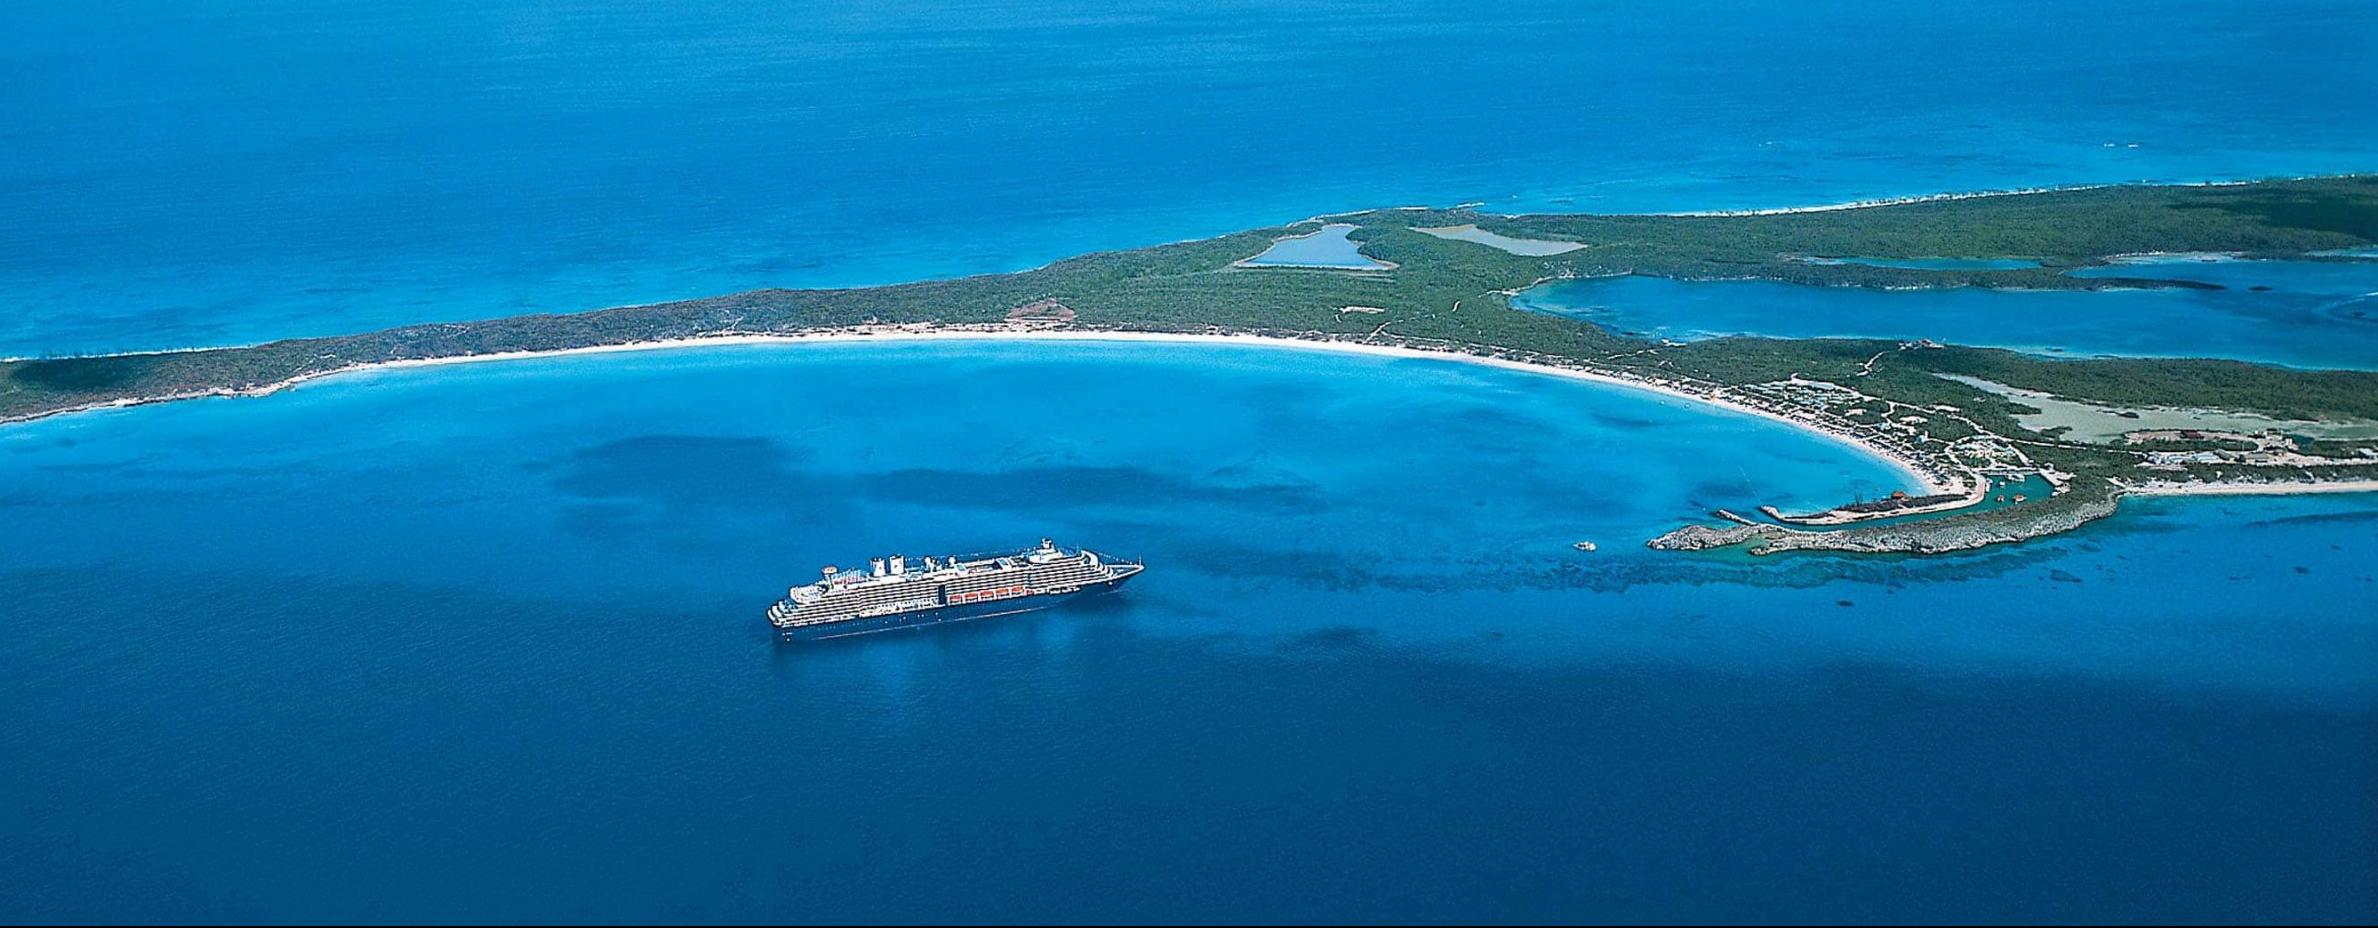 Kruvaziyer devleri özel adalara yatırım yapıyor